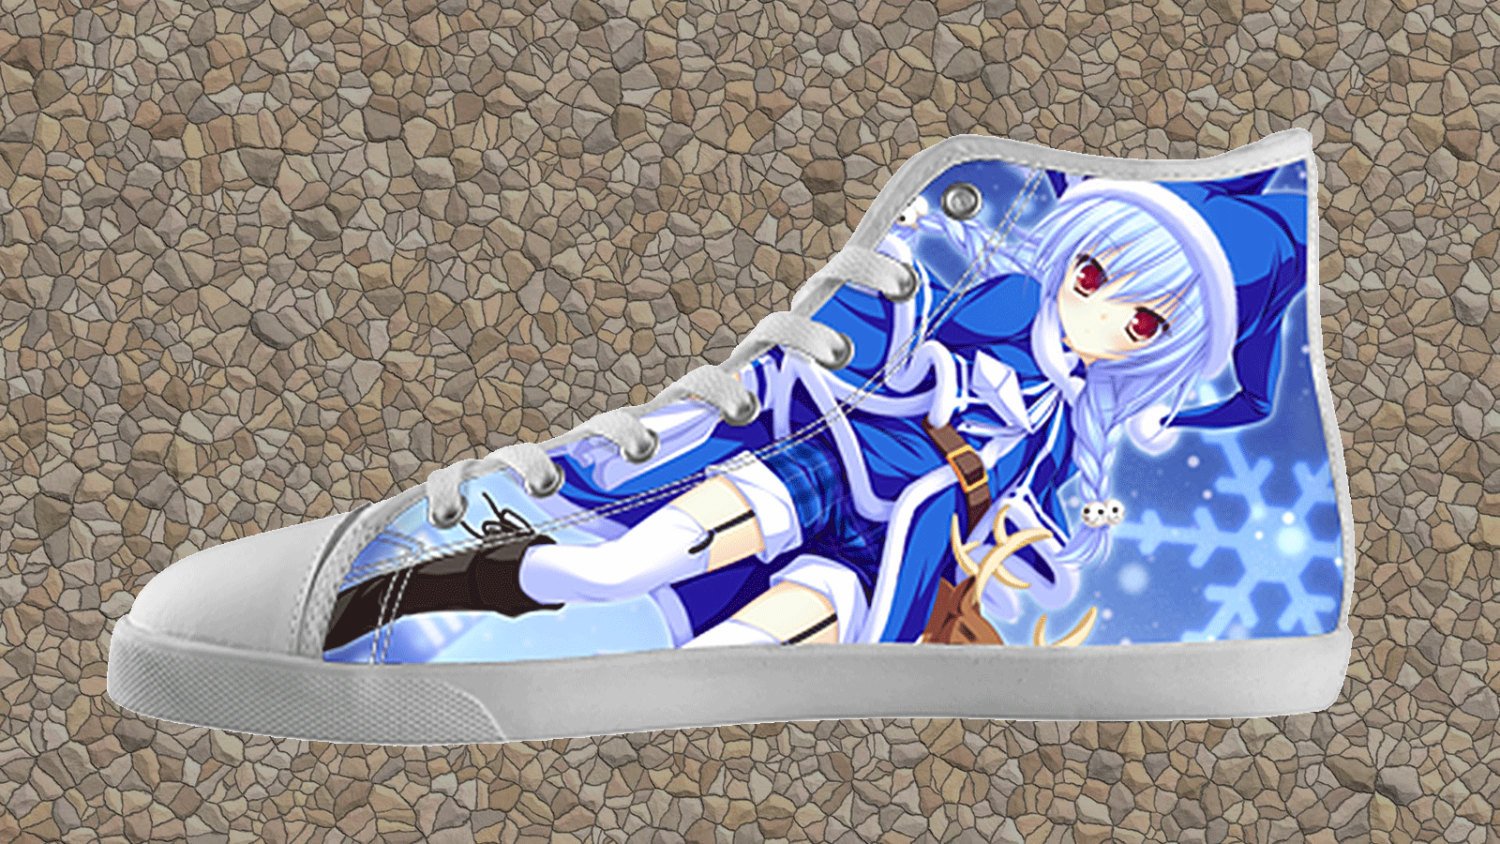 Roy Mustang Skate Shoes Fullmetal Alchemist Custom Anime Shoes PN10 -  Fullmetal Alchemist Merch